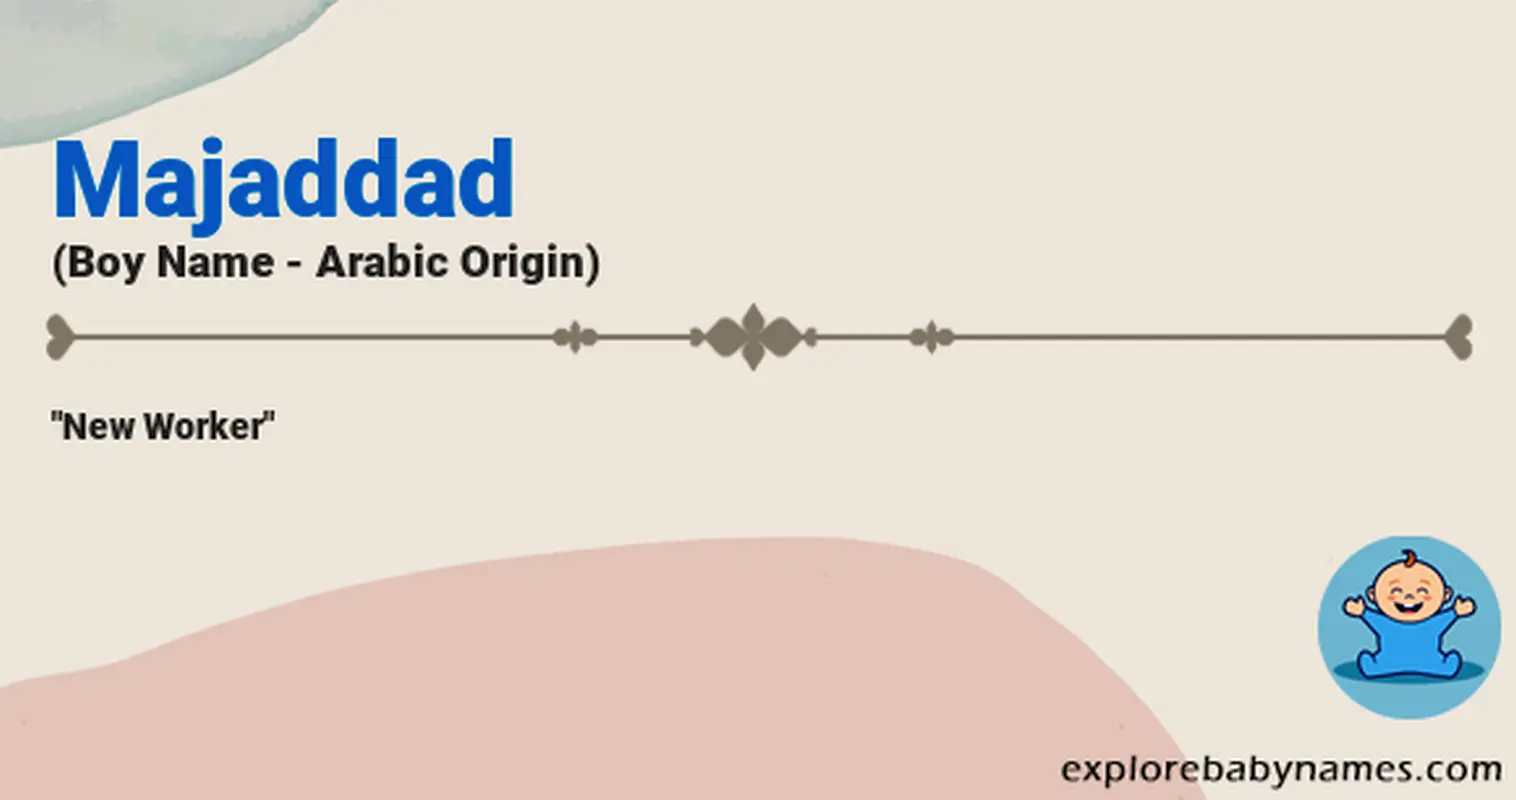 Meaning of Majaddad